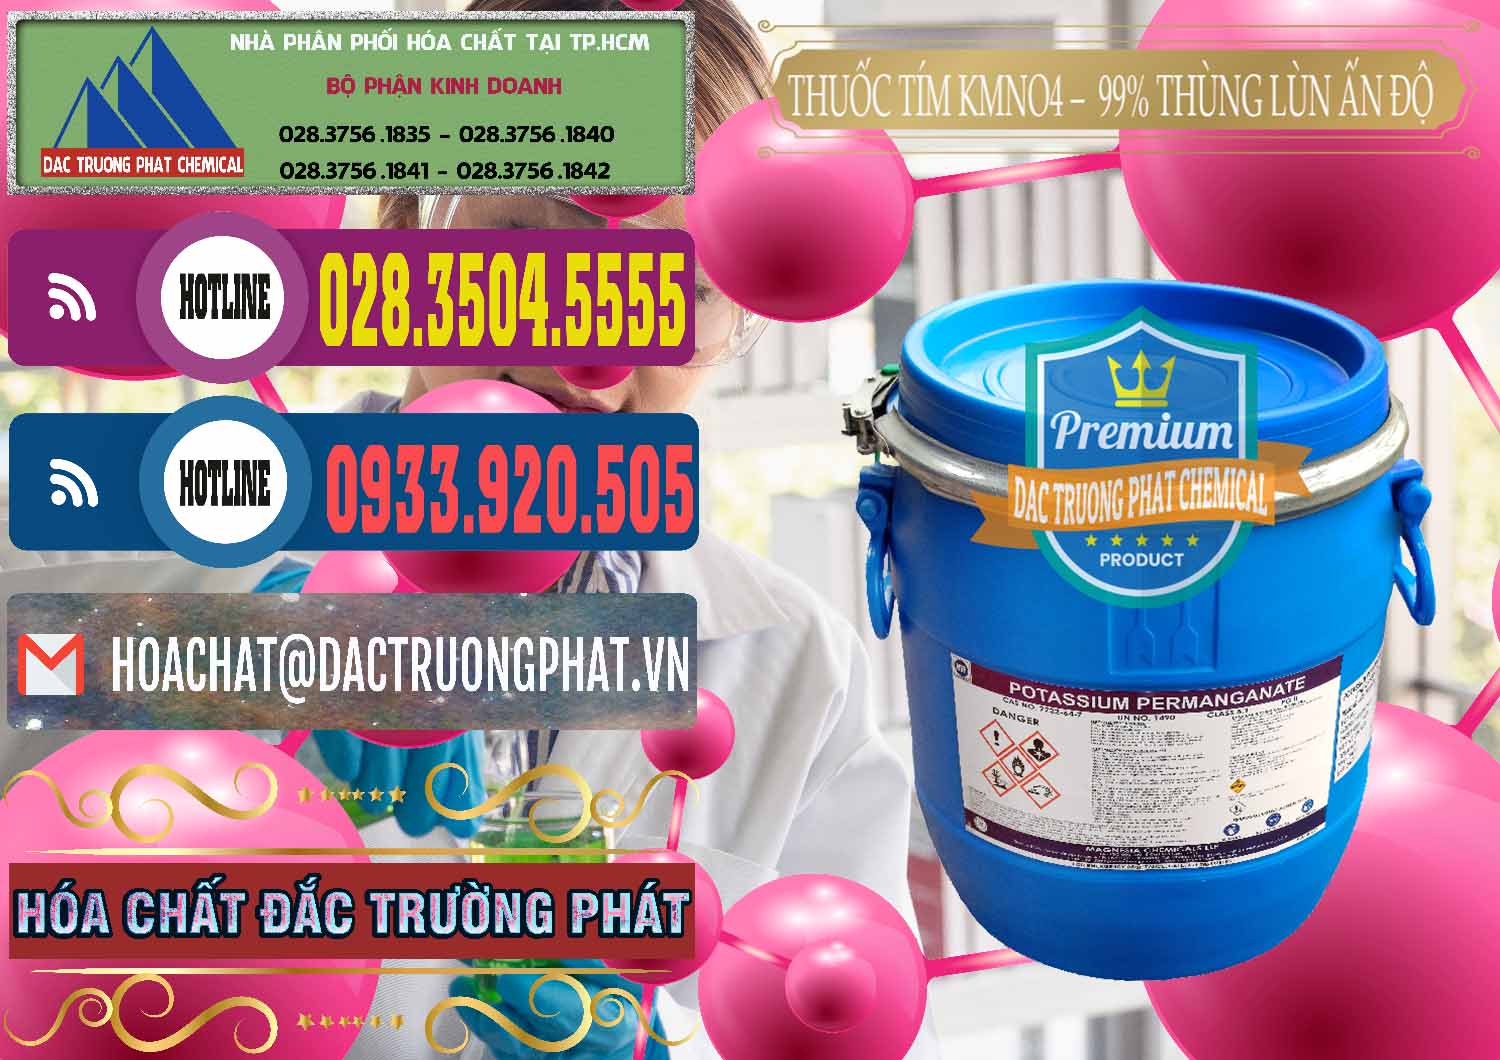 Cty chuyên phân phối & bán Thuốc Tím - KMNO4 Thùng Lùn 99% Magnesia Chemicals Ấn Độ India - 0165 - Nơi chuyên cung cấp - bán hóa chất tại TP.HCM - muabanhoachat.com.vn